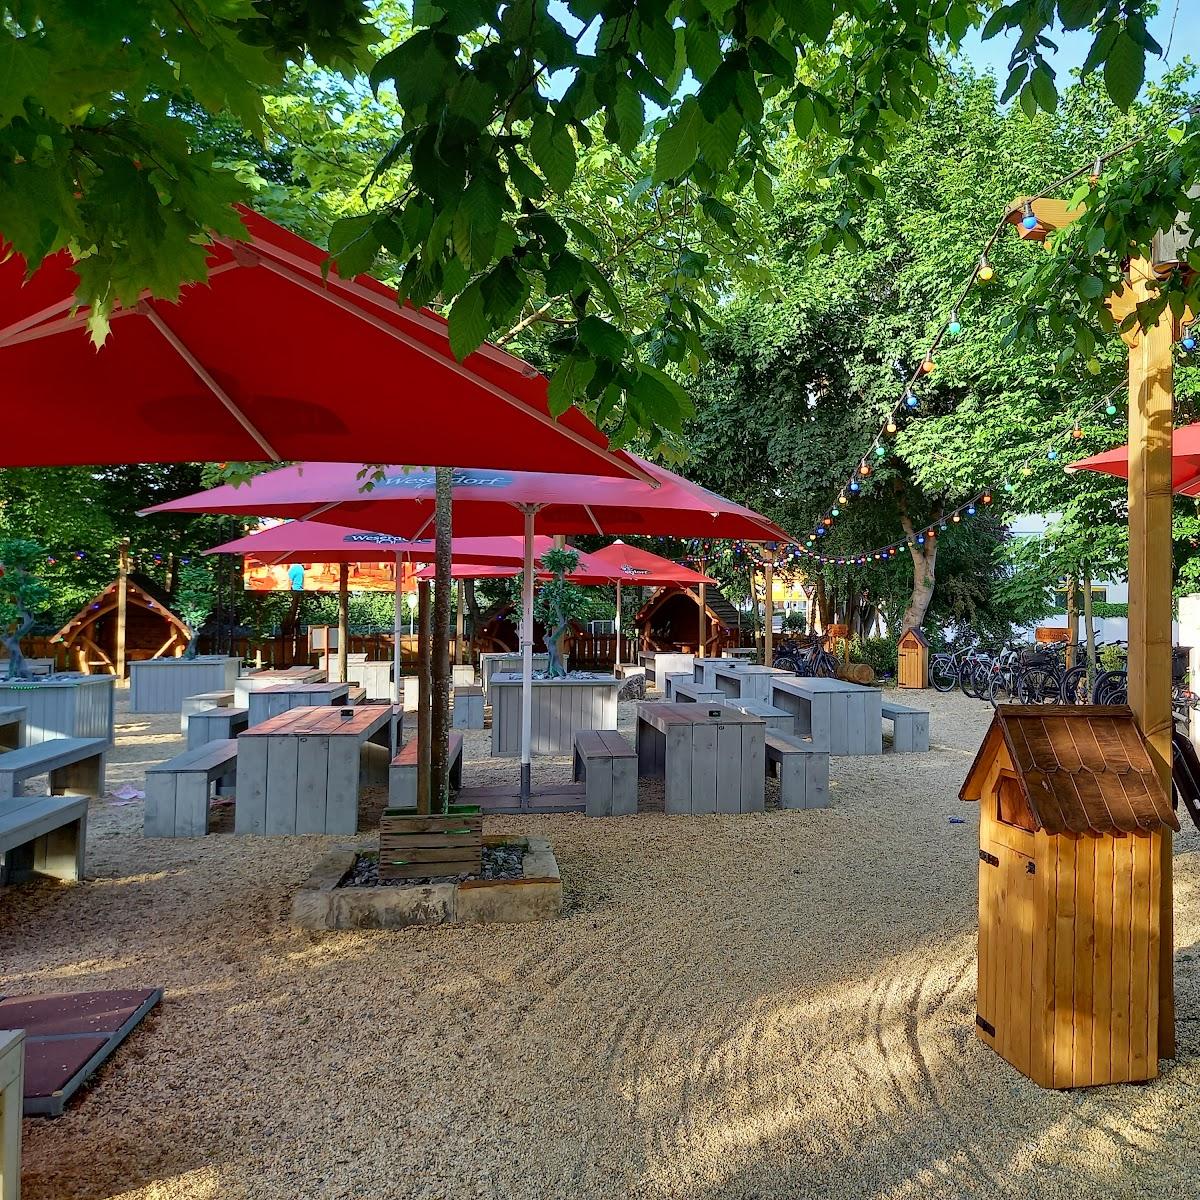 Restaurant "Weserdorf - Der Erlebnisbiergarten" in Rinteln